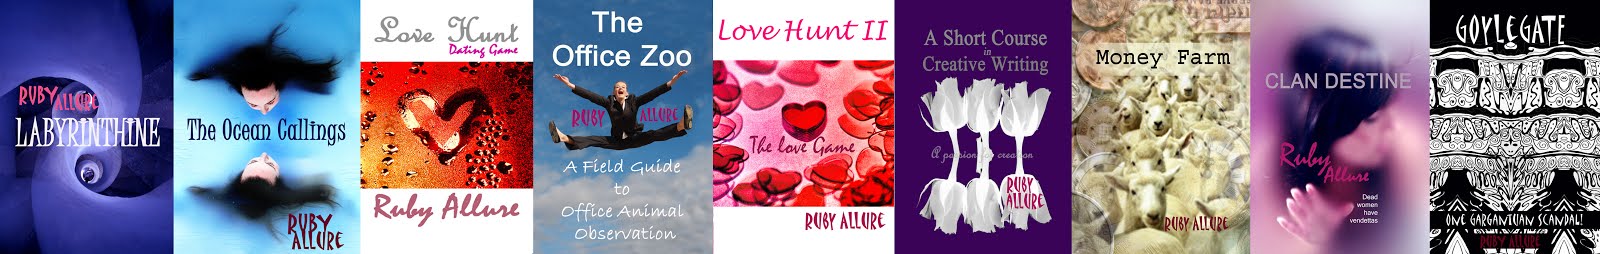 Ruby Allure's Books